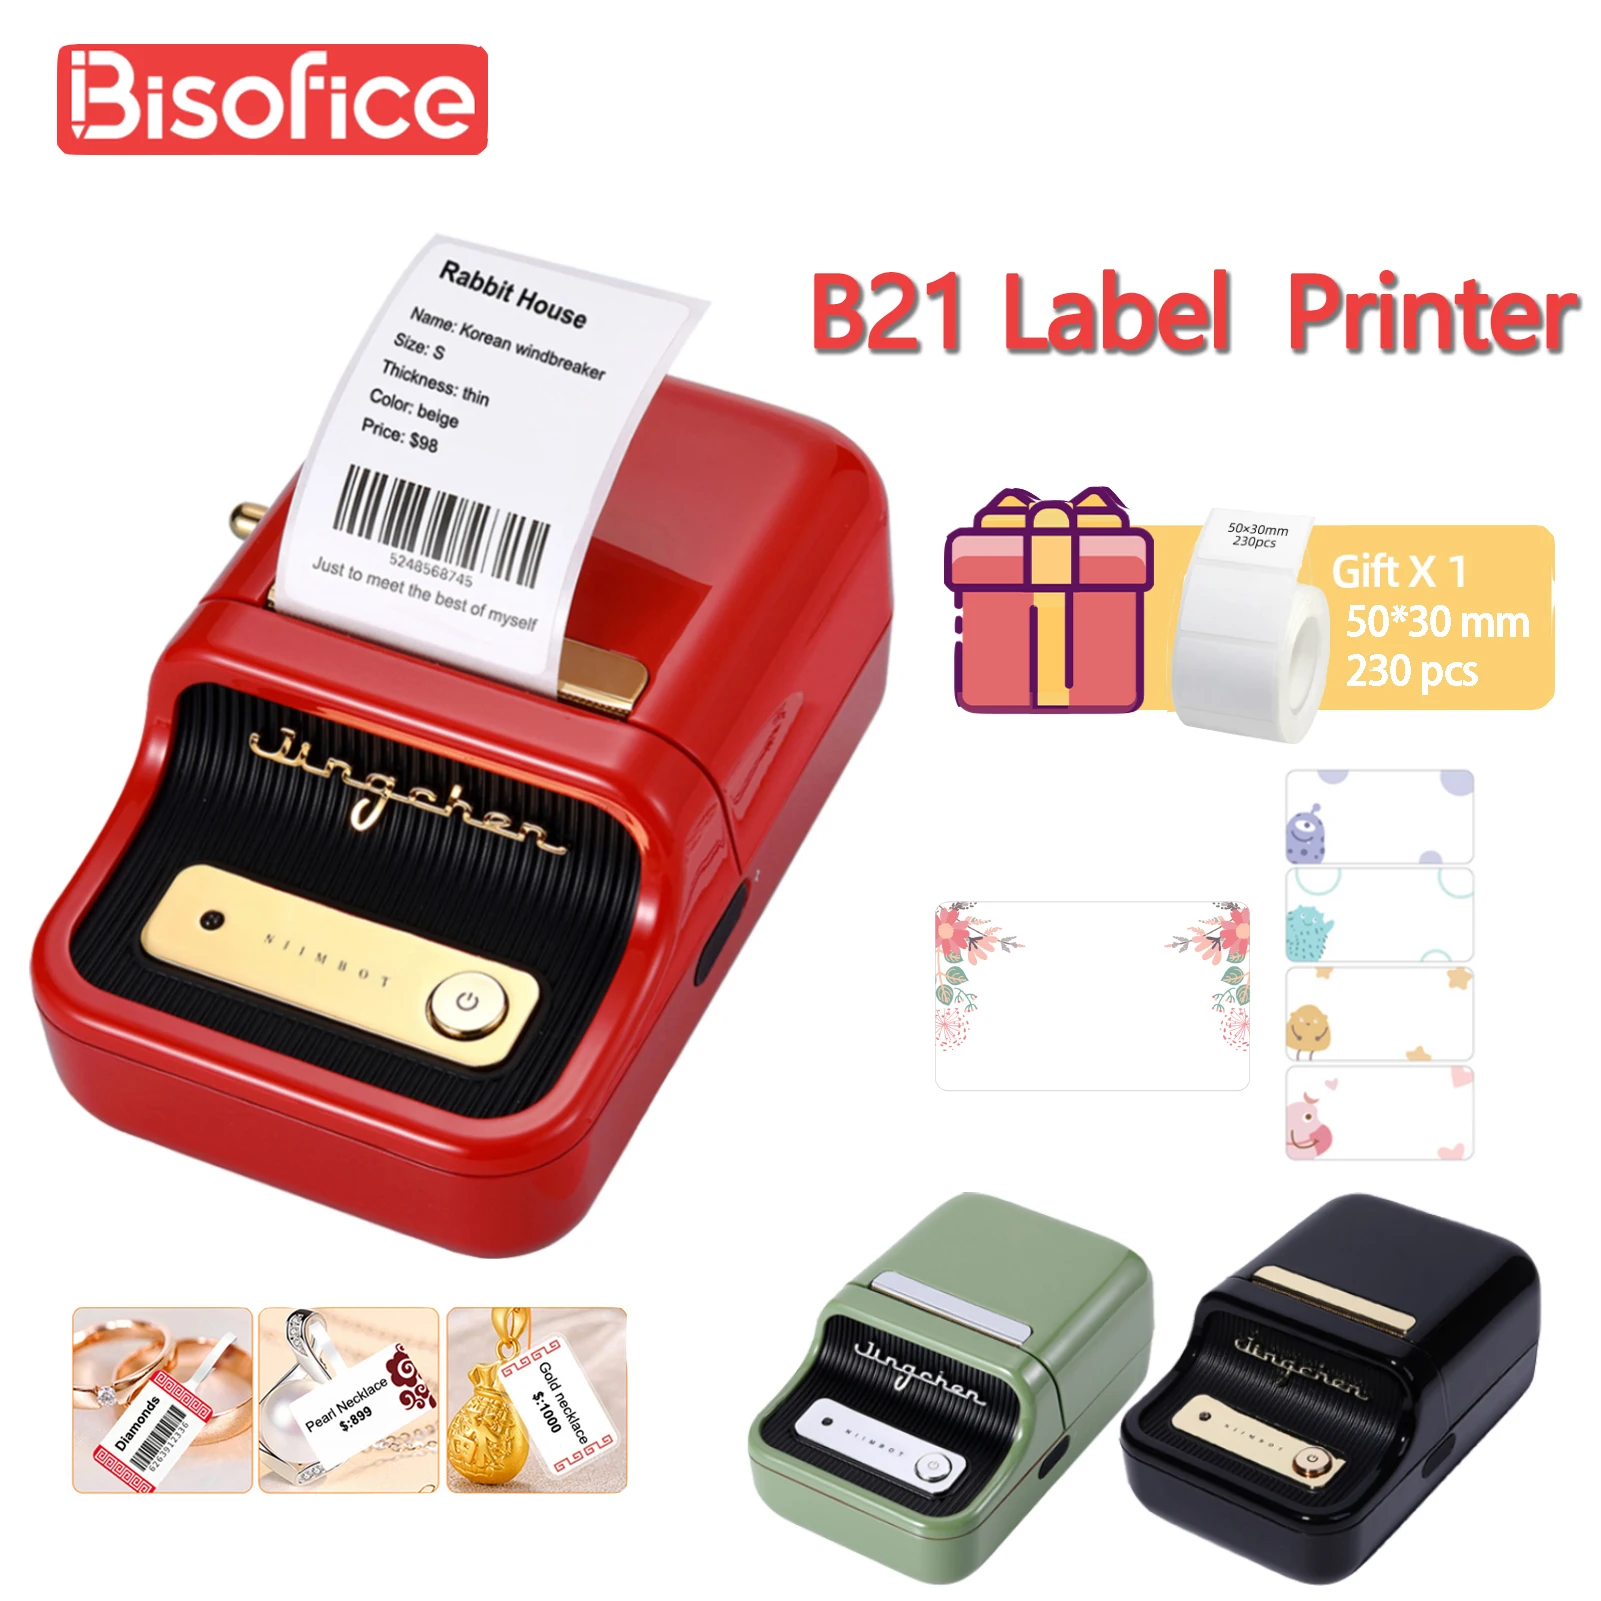 Niimbot-Imprimante d'étiquettes portable B21, sans fil BT, mini